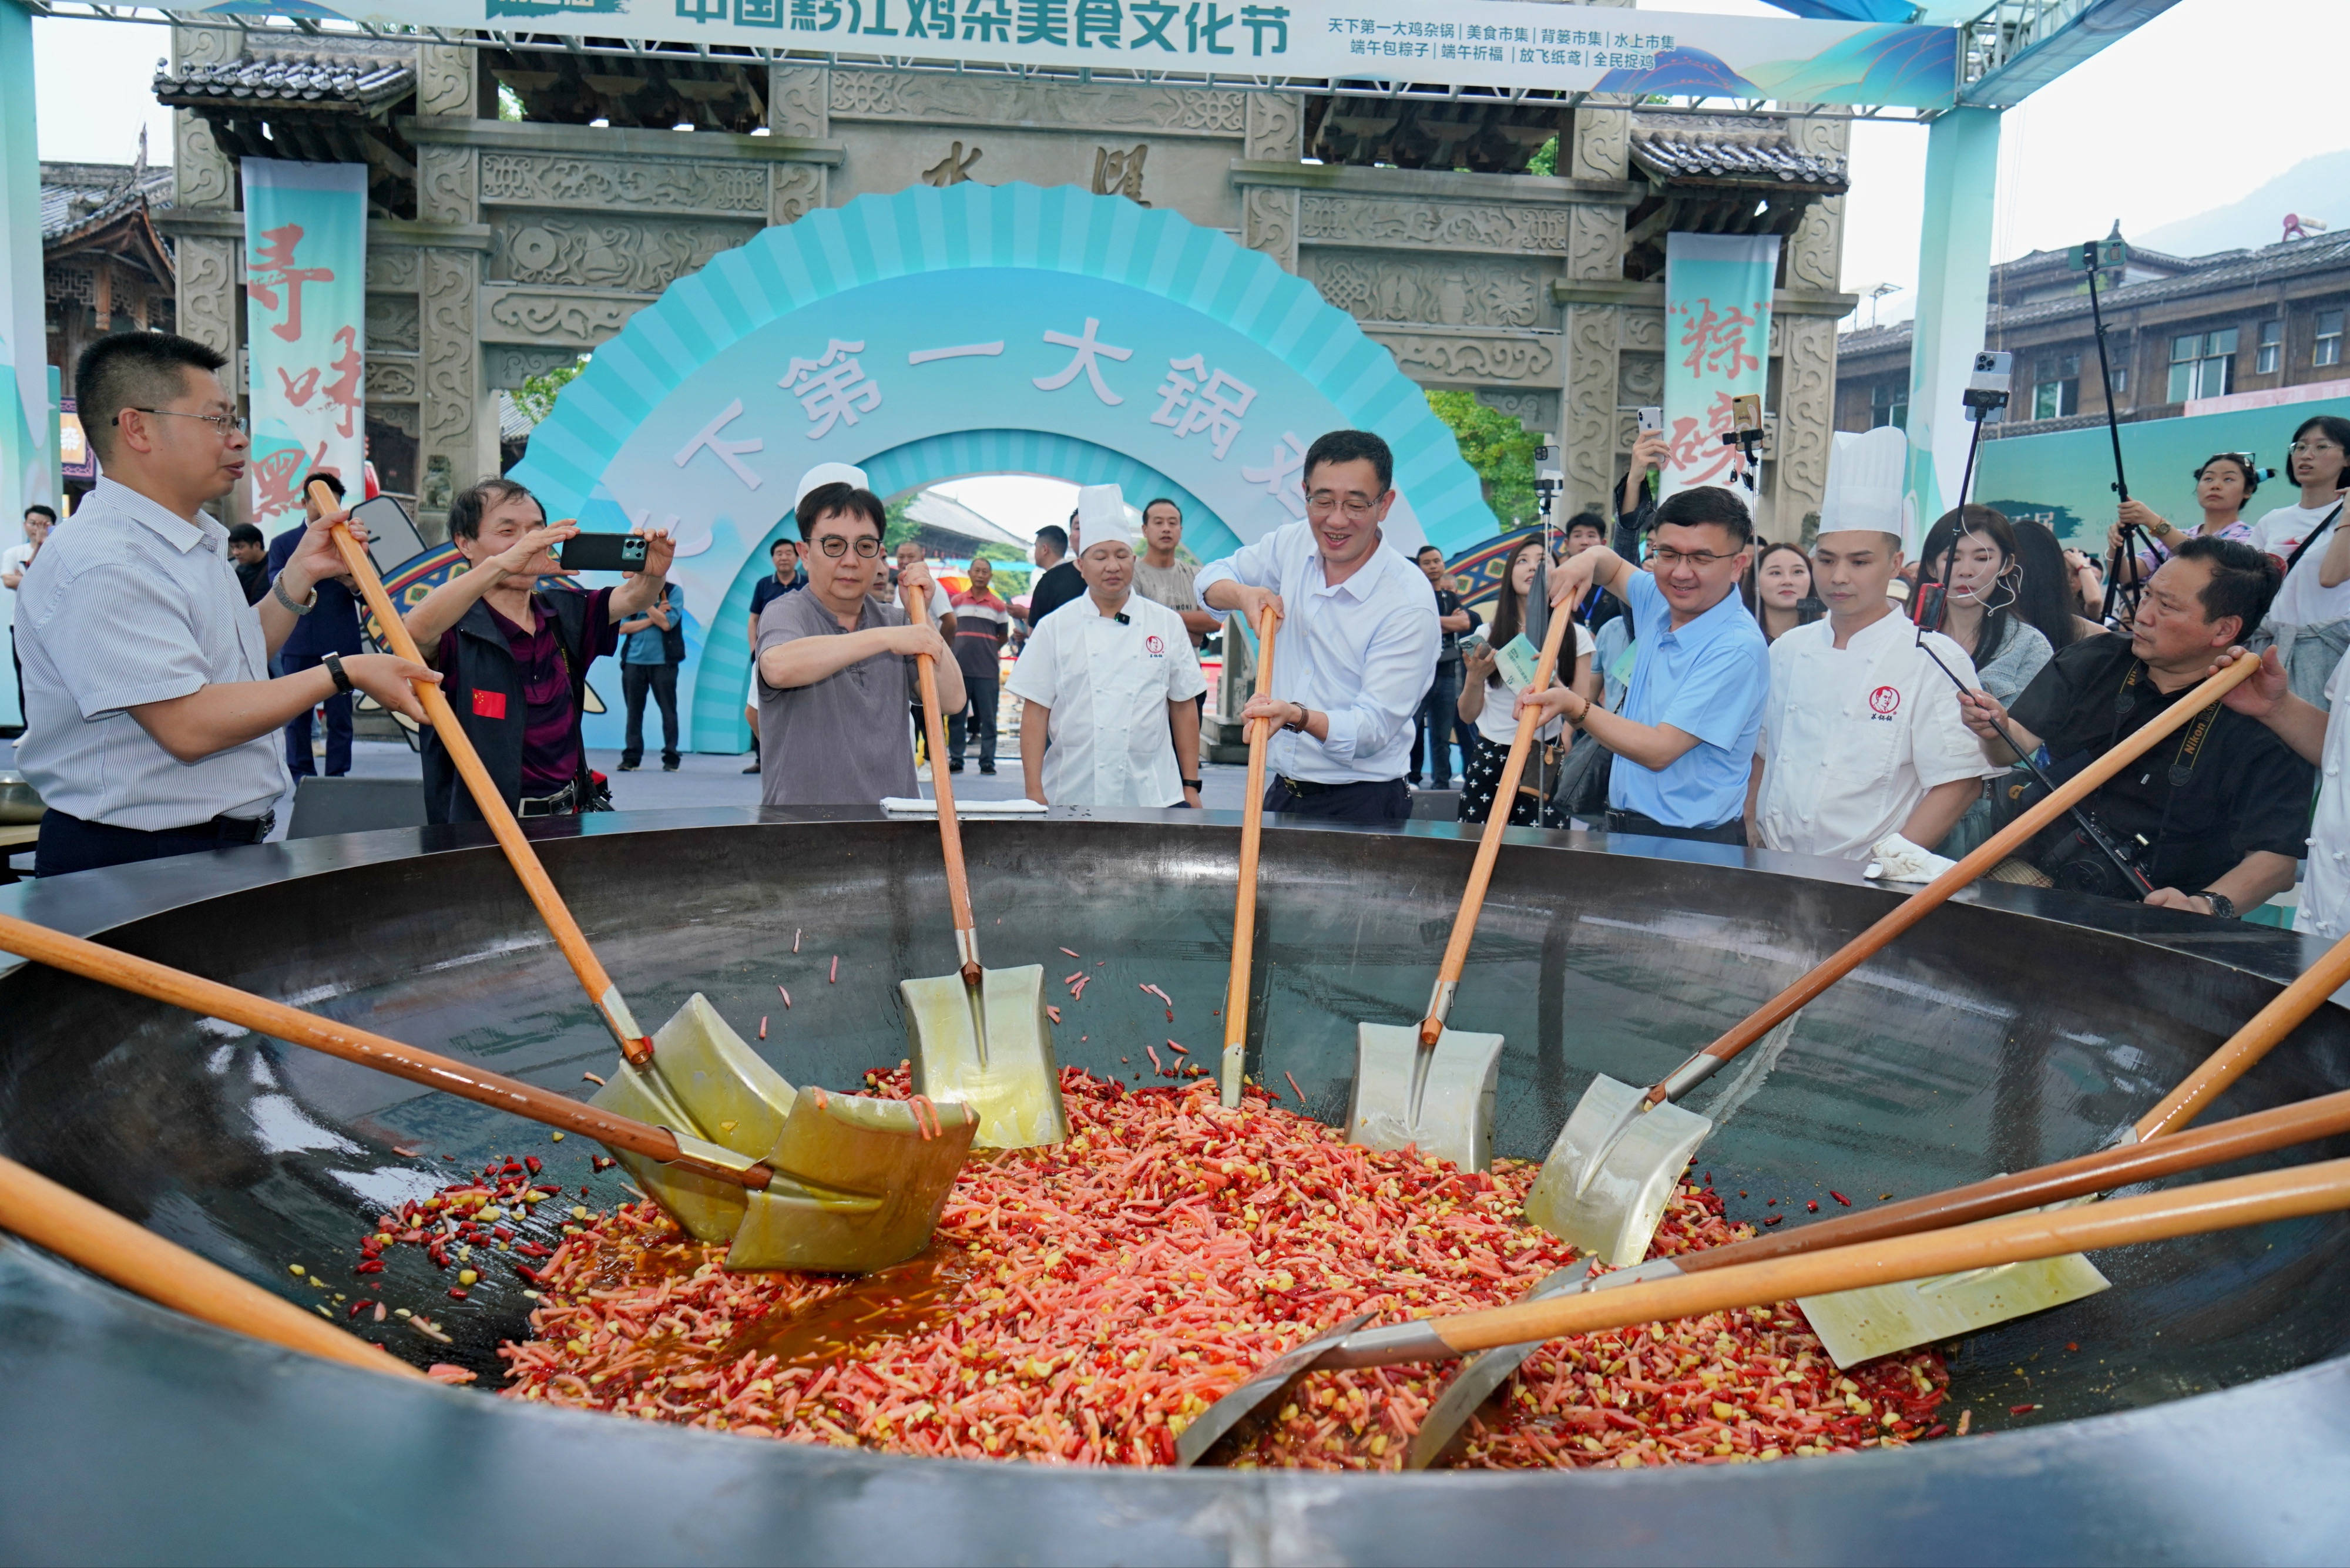 超大鸡杂锅炒出千斤美味 第五届中国黔江鸡杂美食文化节启幕